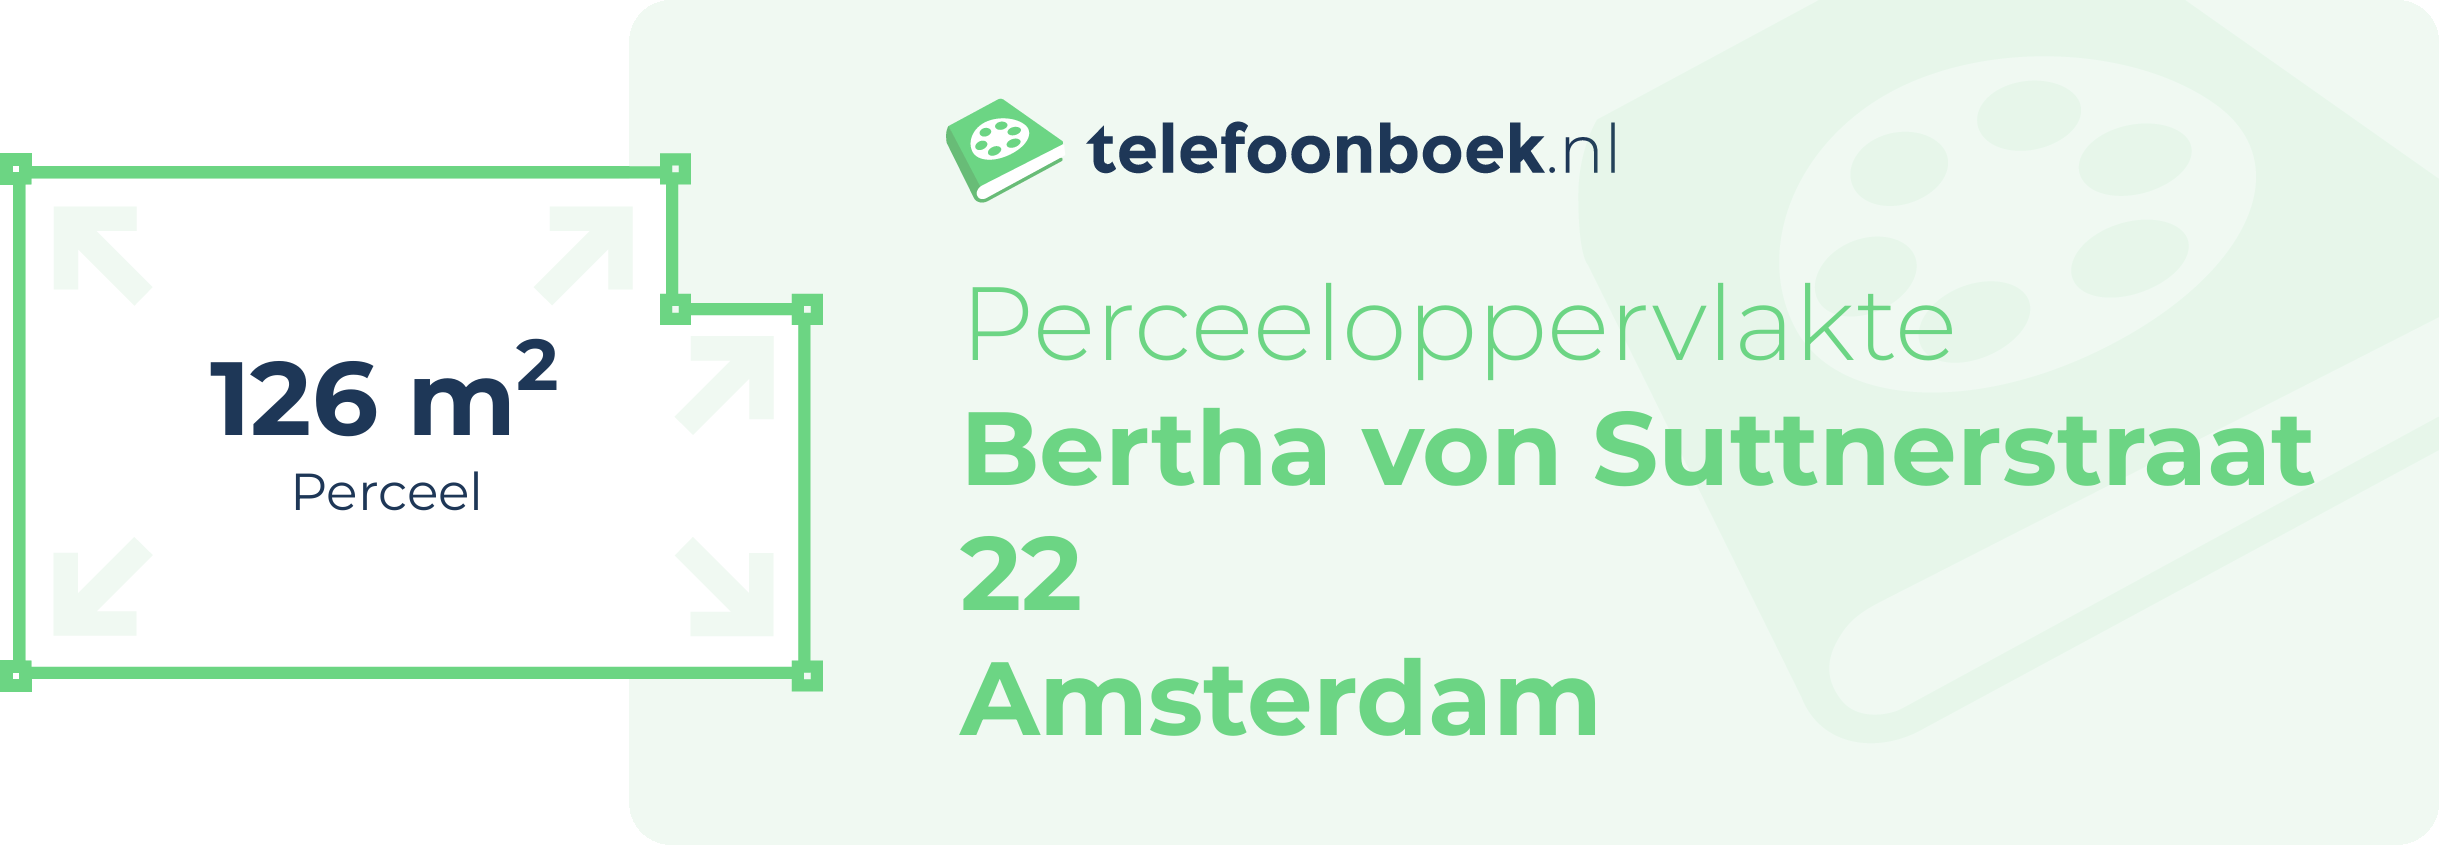 Perceeloppervlakte Bertha Von Suttnerstraat 22 Amsterdam